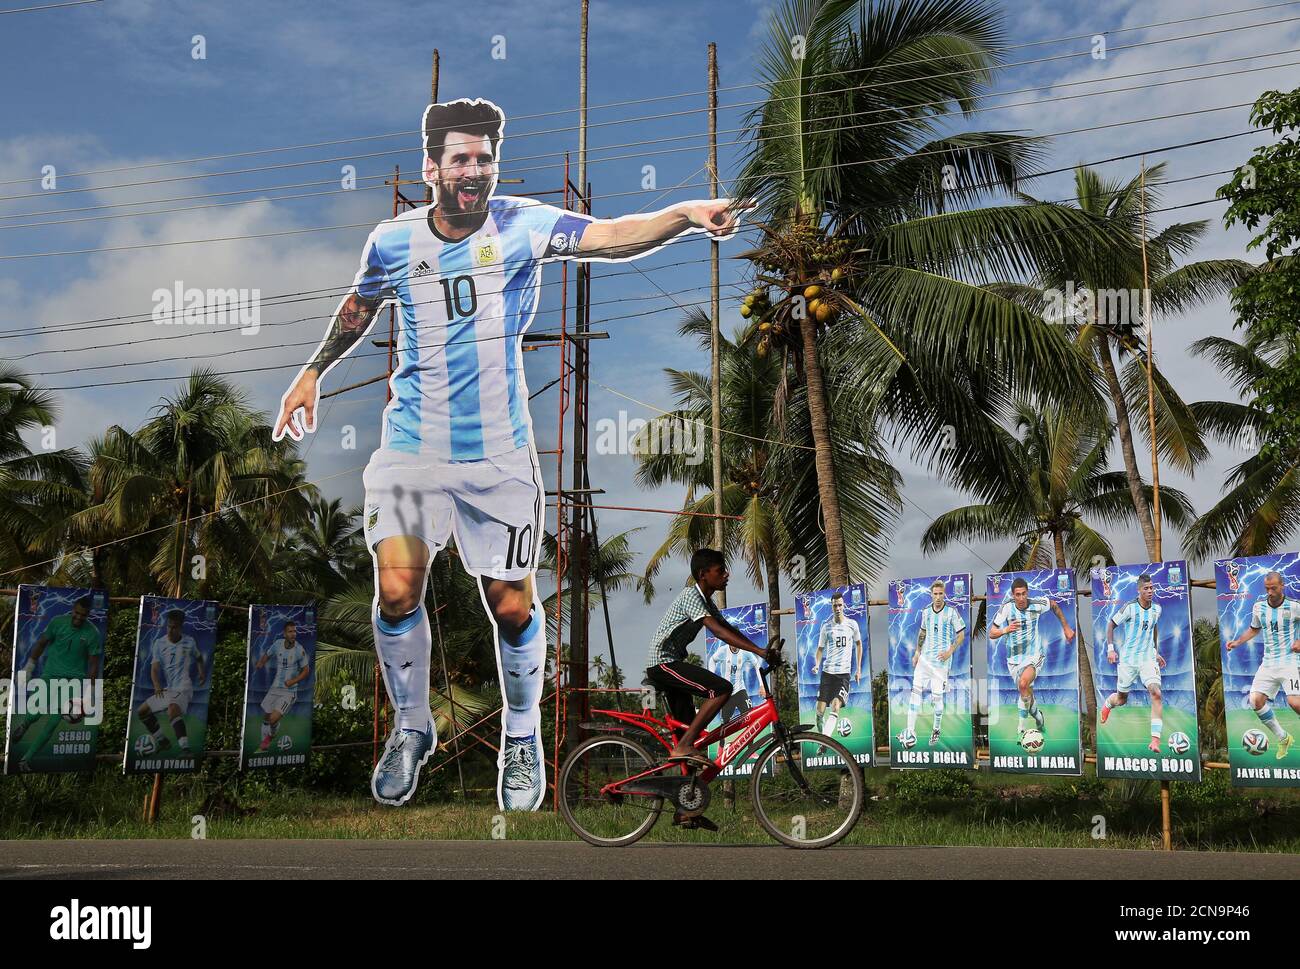 Un niño pasa su bicicleta por un gigantesco jugador de fútbol argentino Lionel Messi en una carretera, antes del encuentro del Grupo D de la Copa Mundial de la FIFA entre